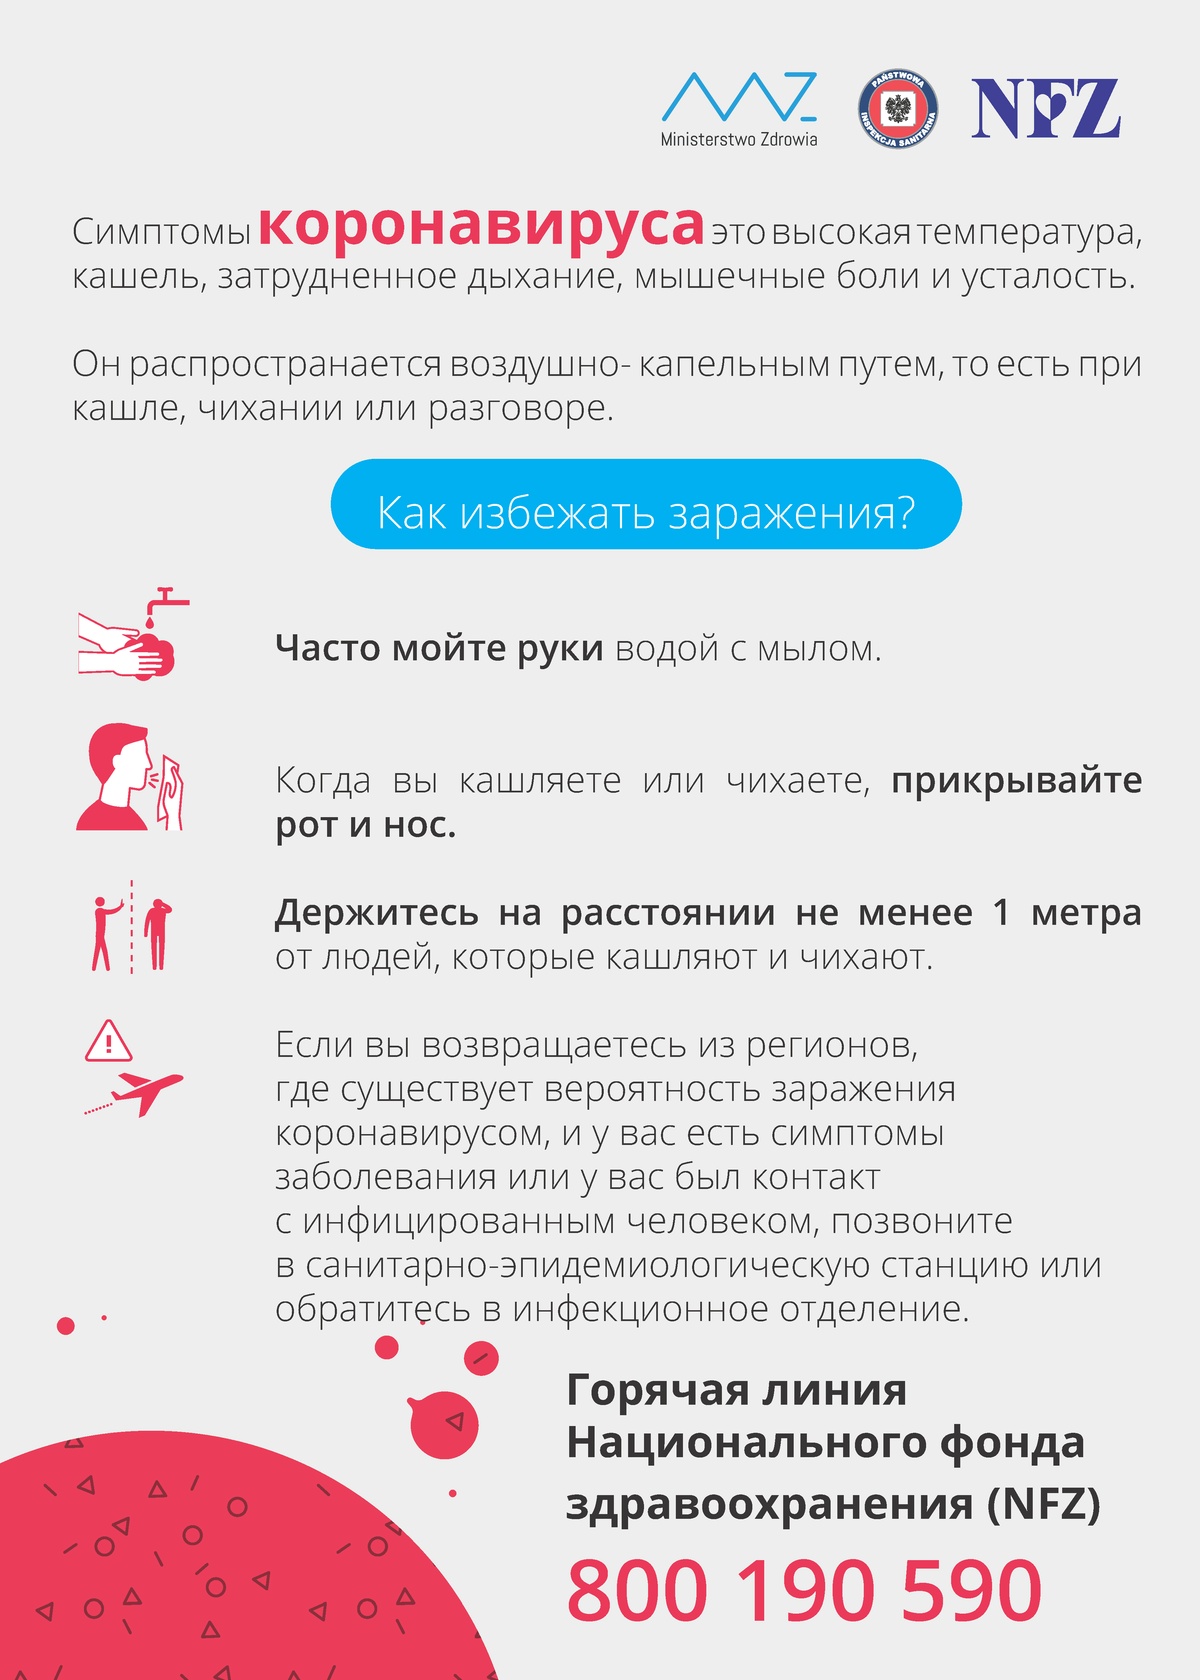 UWAGA! Koronawirus wciąż się rozprzestrzenia - język rosyjski